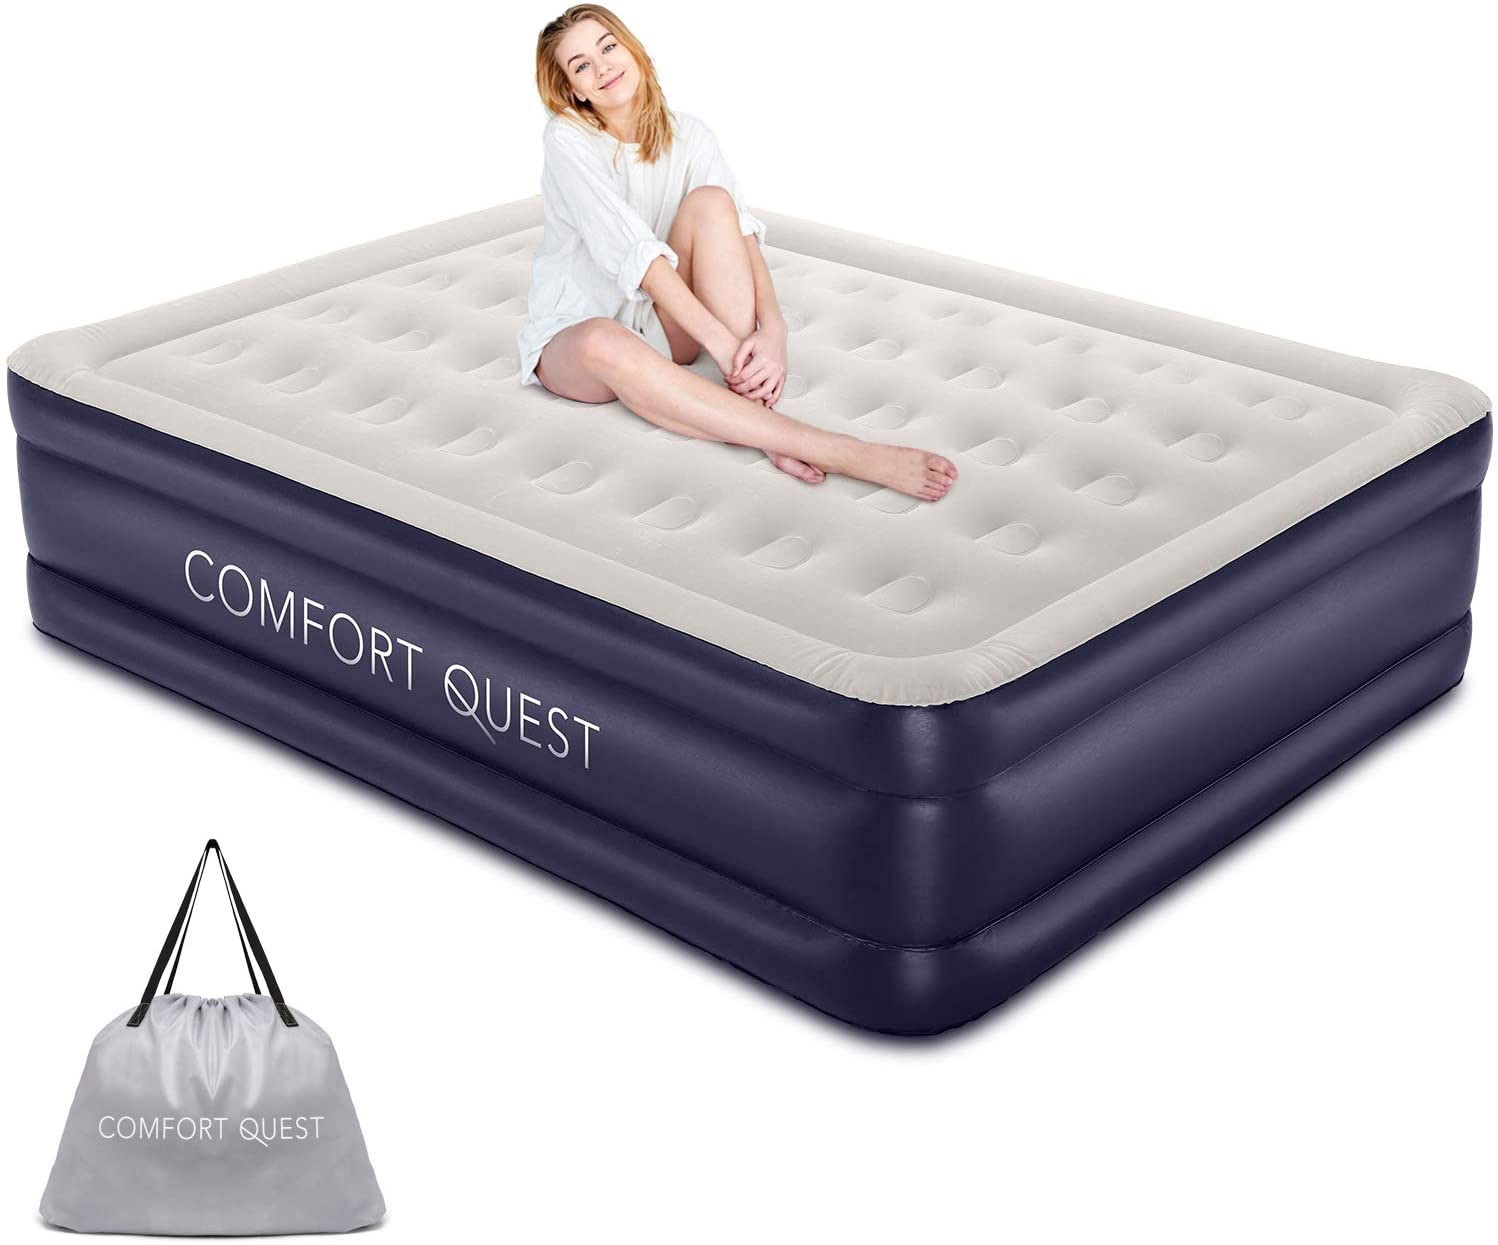 quest queen size air mattress reviews